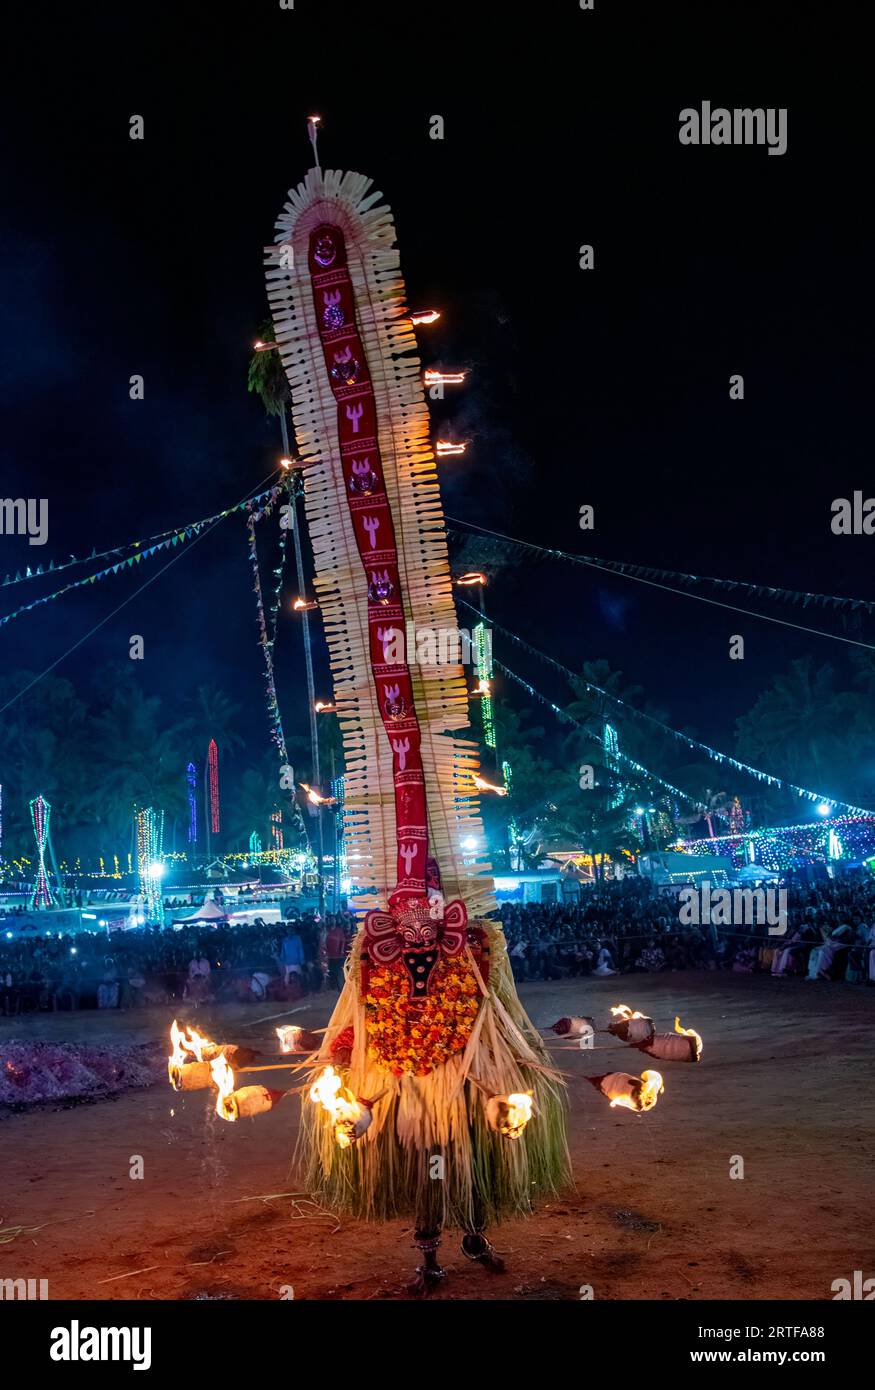 Capturer l'âme du Kerala : Theyyam danses dévoilées. Célébrant les traditions vibrantes des danses Theyyam du Kerala Banque D'Images